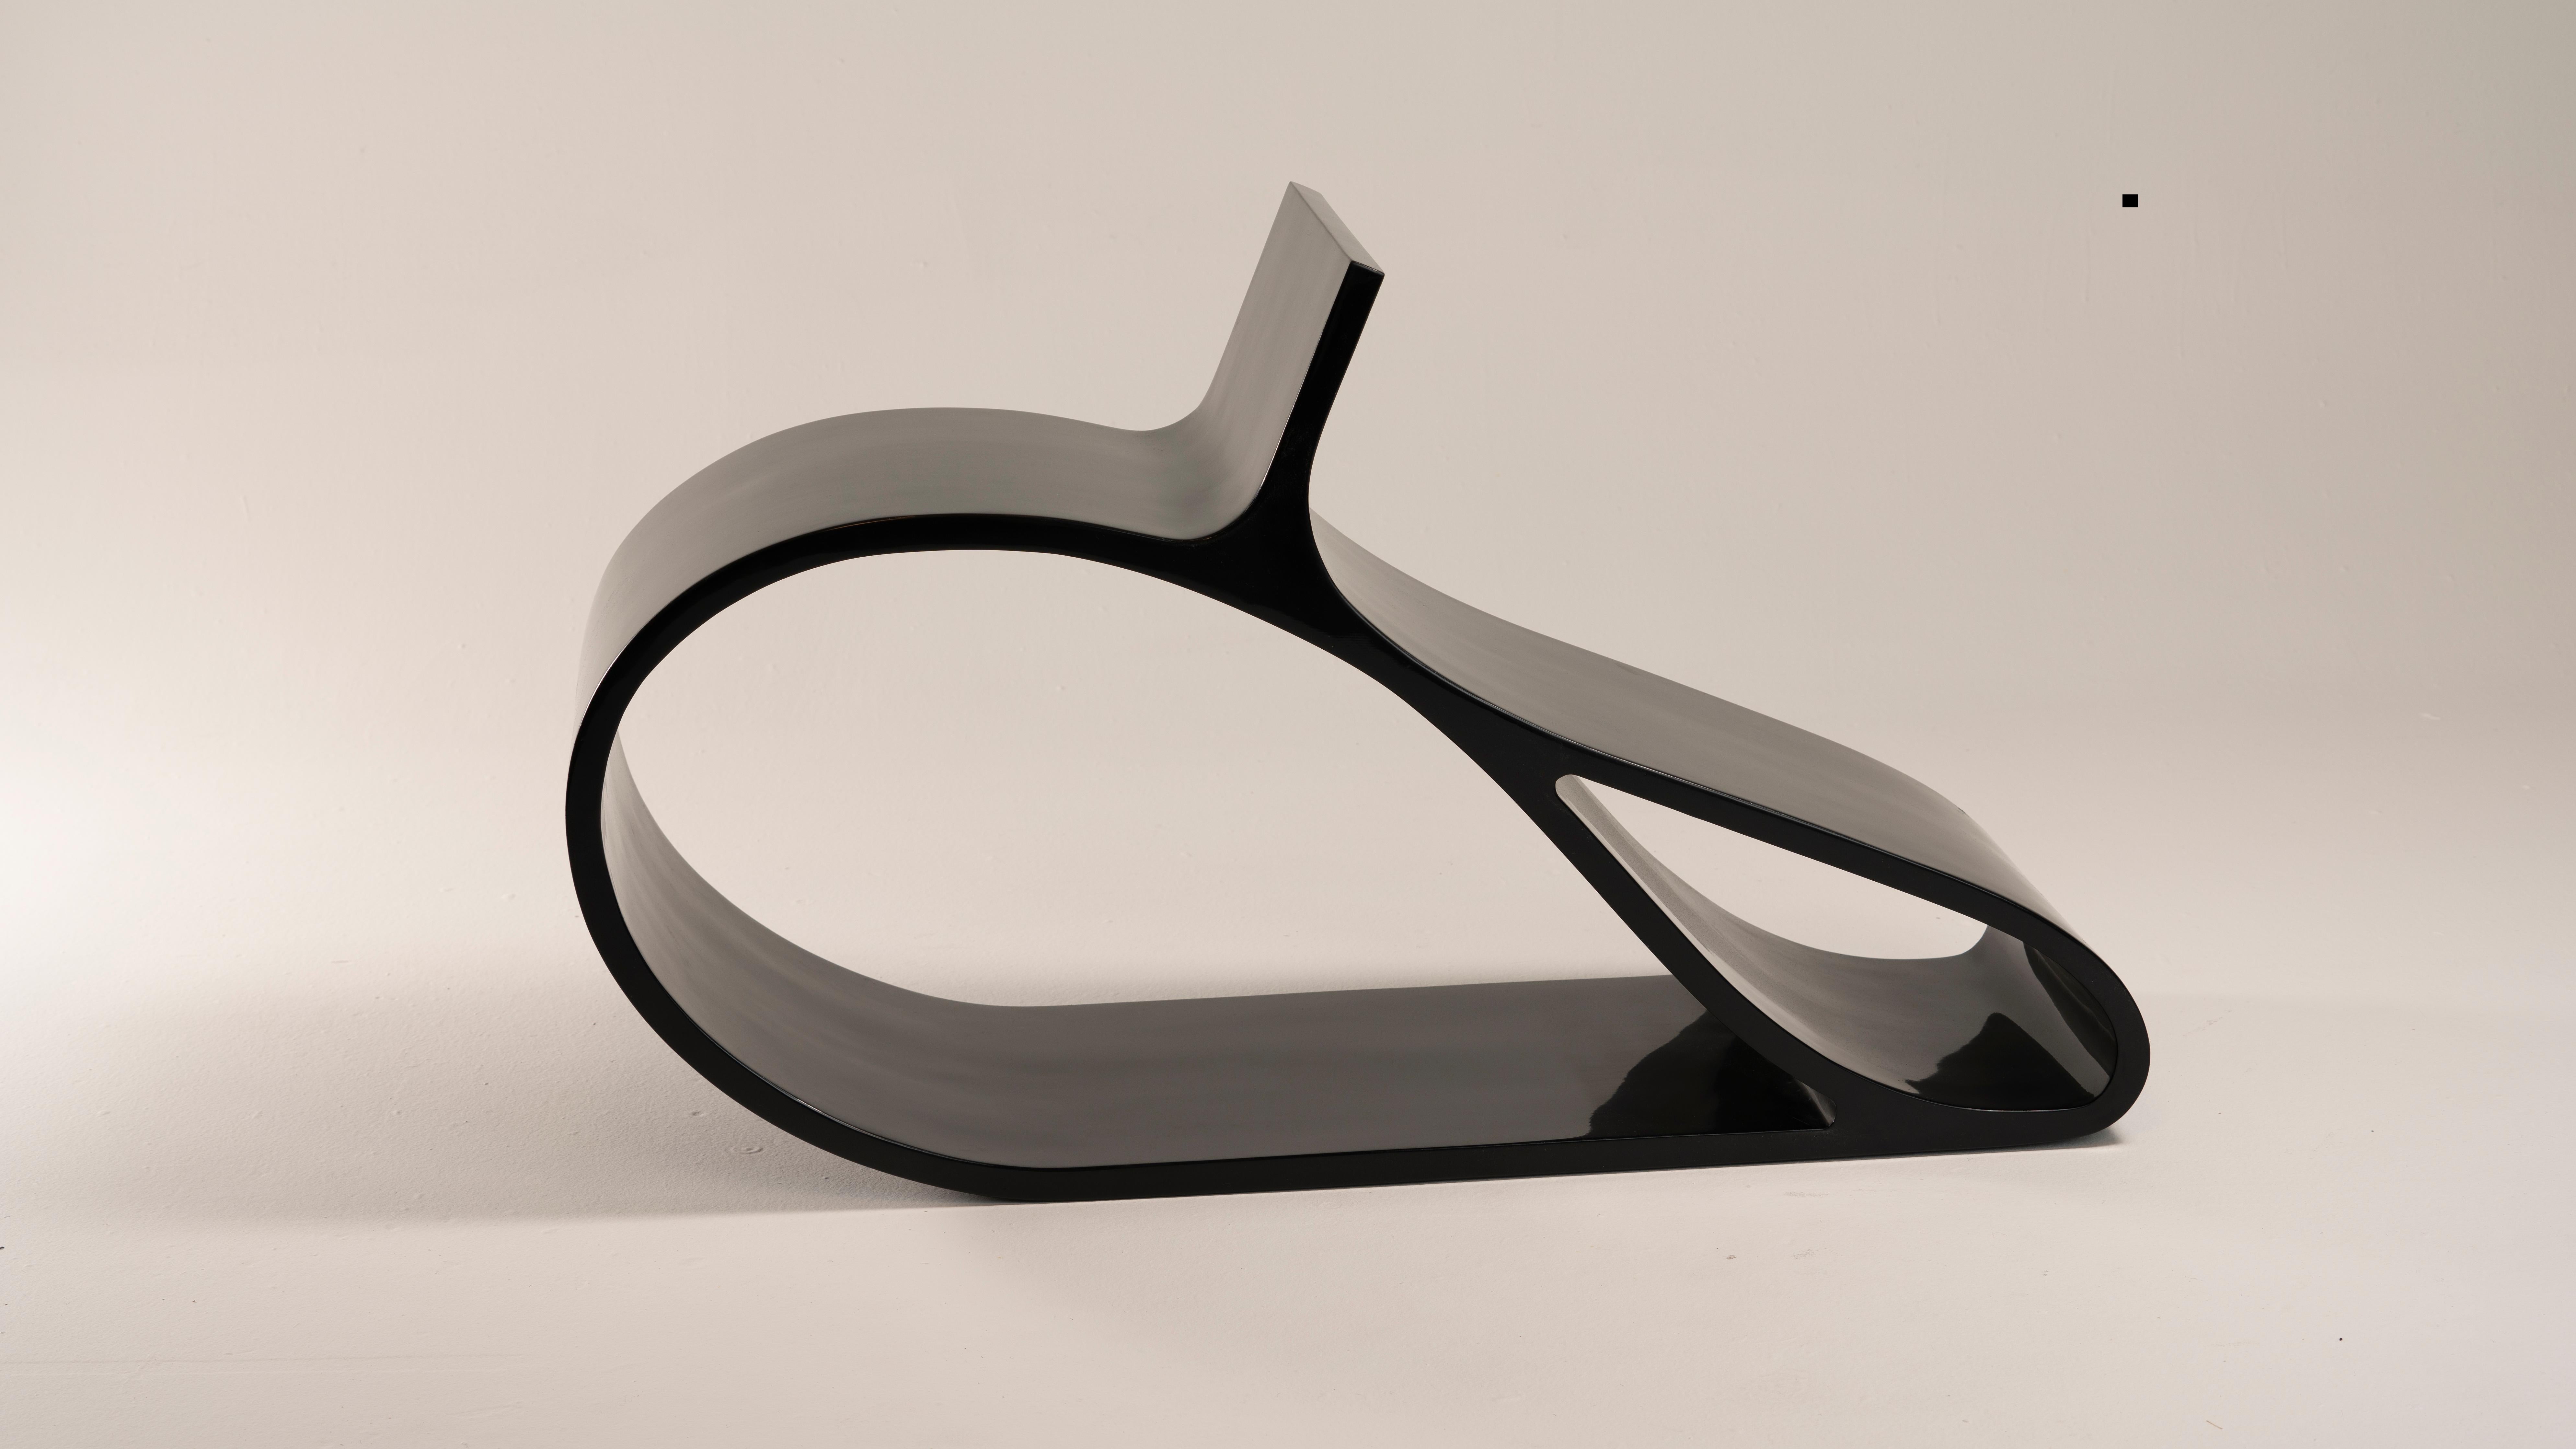 Avec Belcanto, le matériau est poussé à ses limites dans une forme fluide, dynamique et continue. La forme sinueuse révèle un profil inattendu.
Fabriquée en bois de guayubira d'Amérique du Sud, Belcanto est une chaise sculpturale unique en son